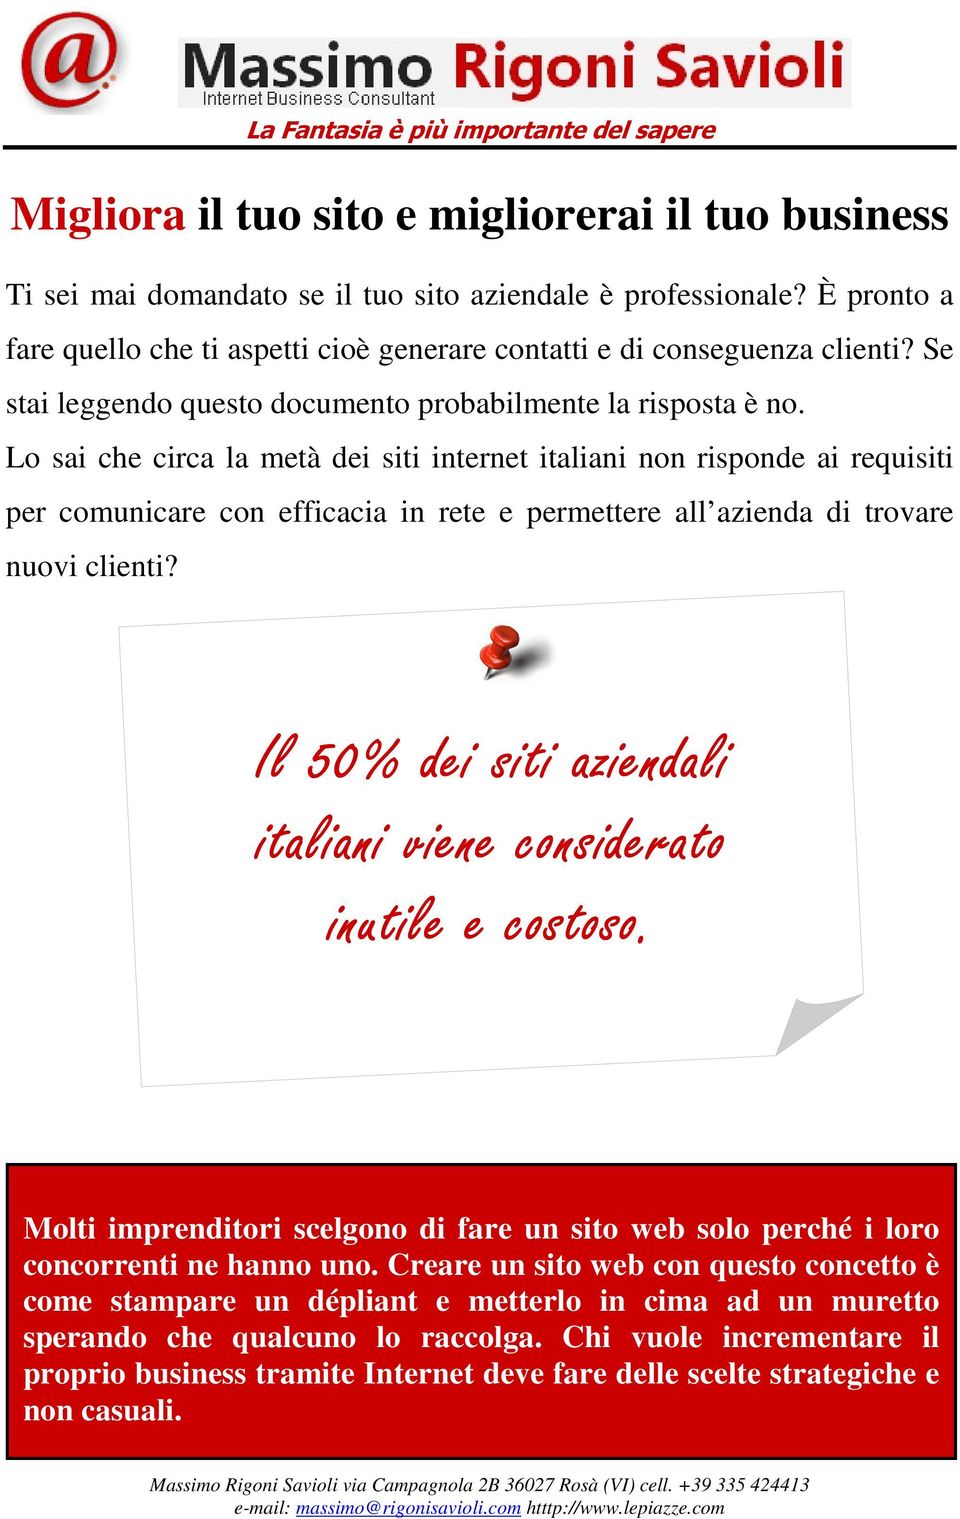 Lo sai che circa la metà dei siti internet italiani non risponde ai requisiti per comunicare con efficacia in rete e permettere all azienda di trovare nuovi clienti?